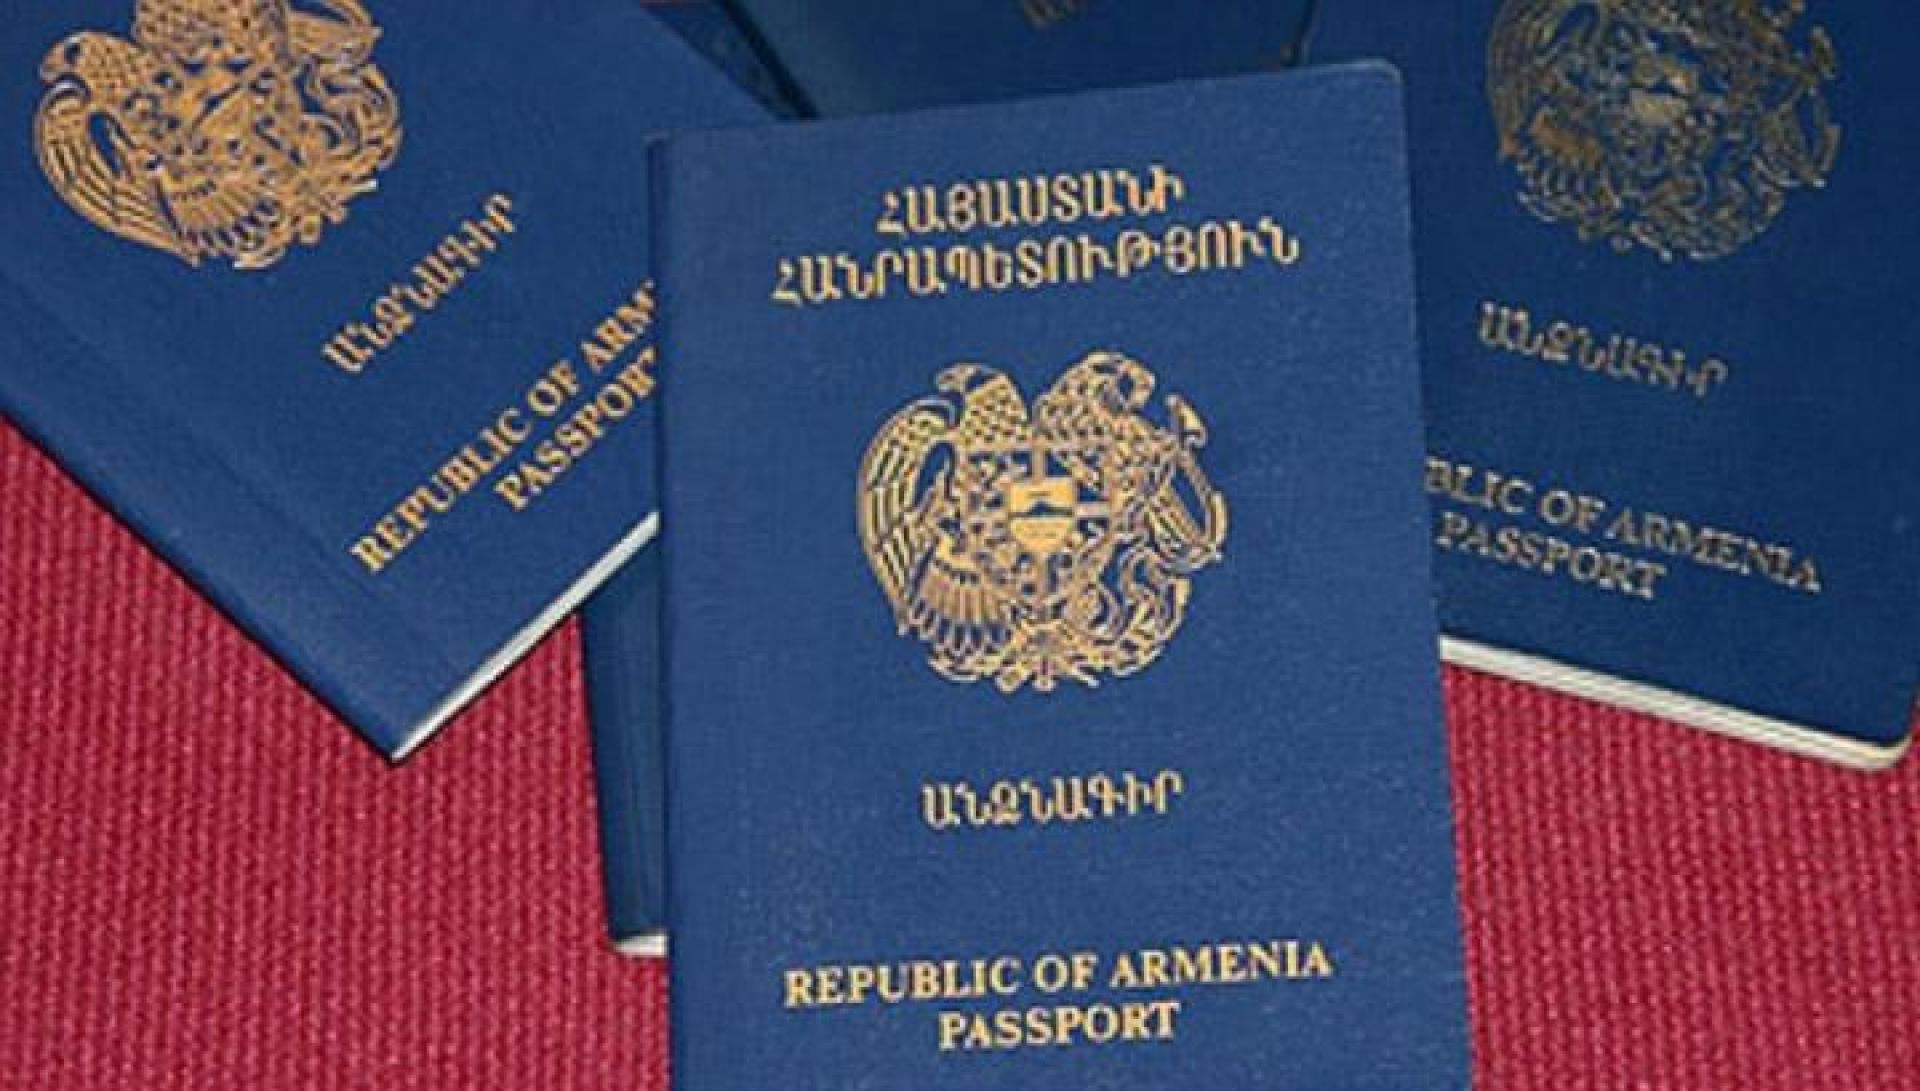 С поставкой паспортов возникли перебои из-за коронавируса: полиция Армении разъясняет 